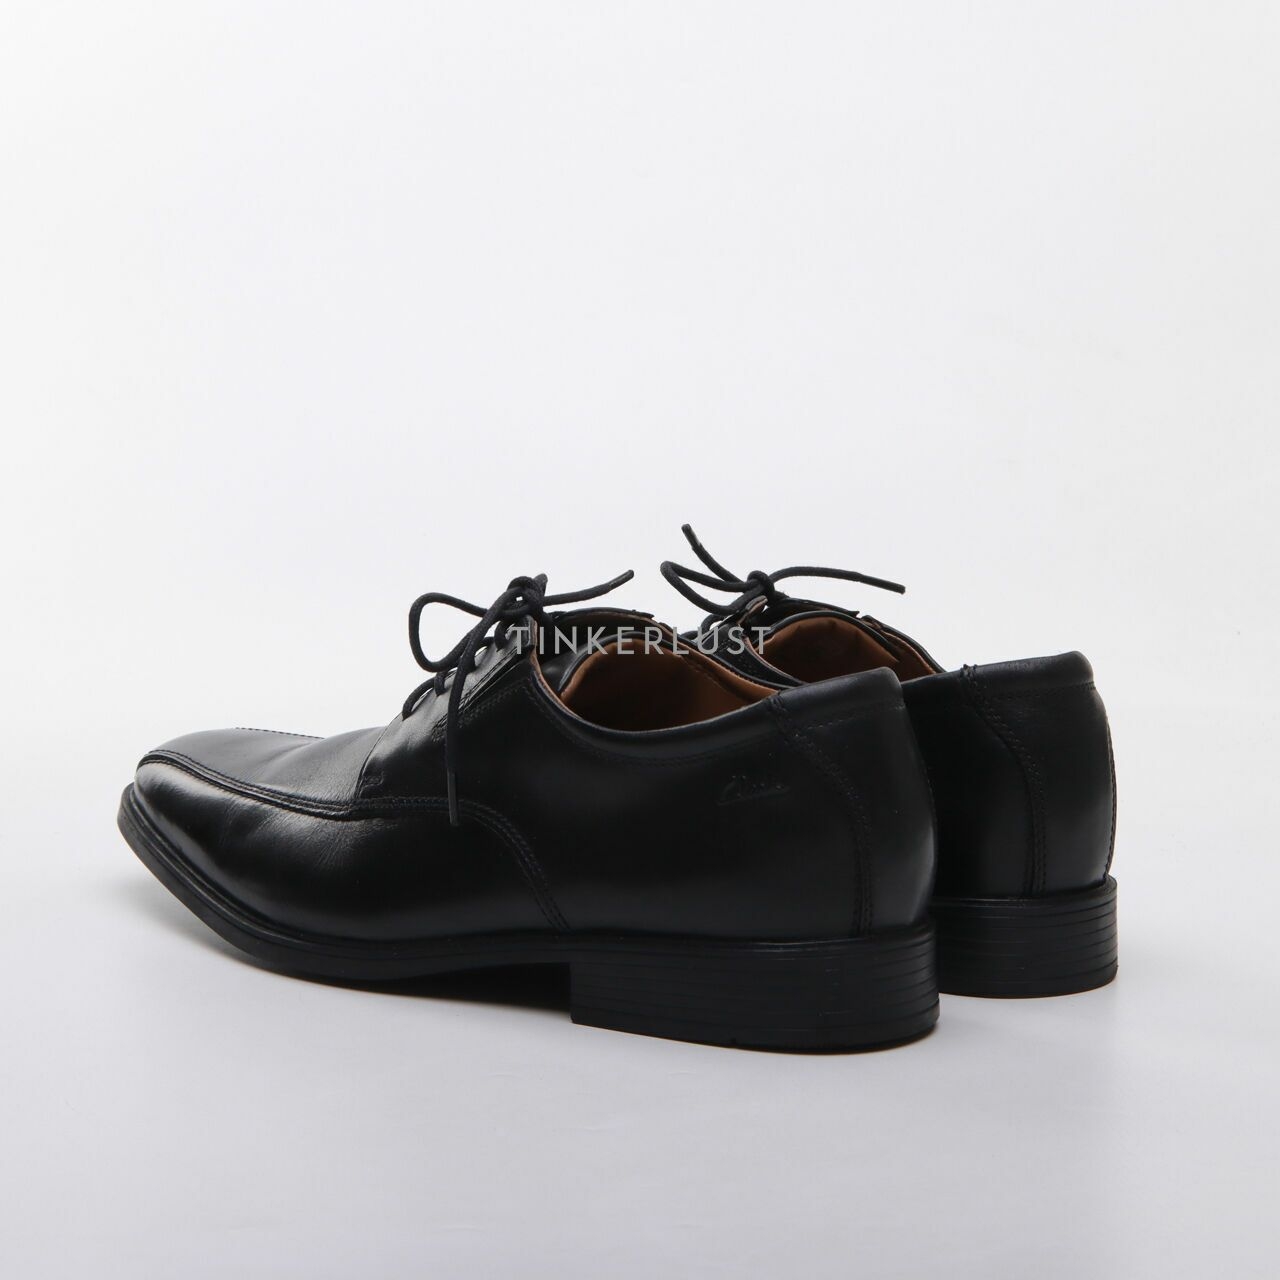 Men's Clarks Tilden Walk Lace-Up Oxfords Shoes Black Leather Square Toe Size 11M